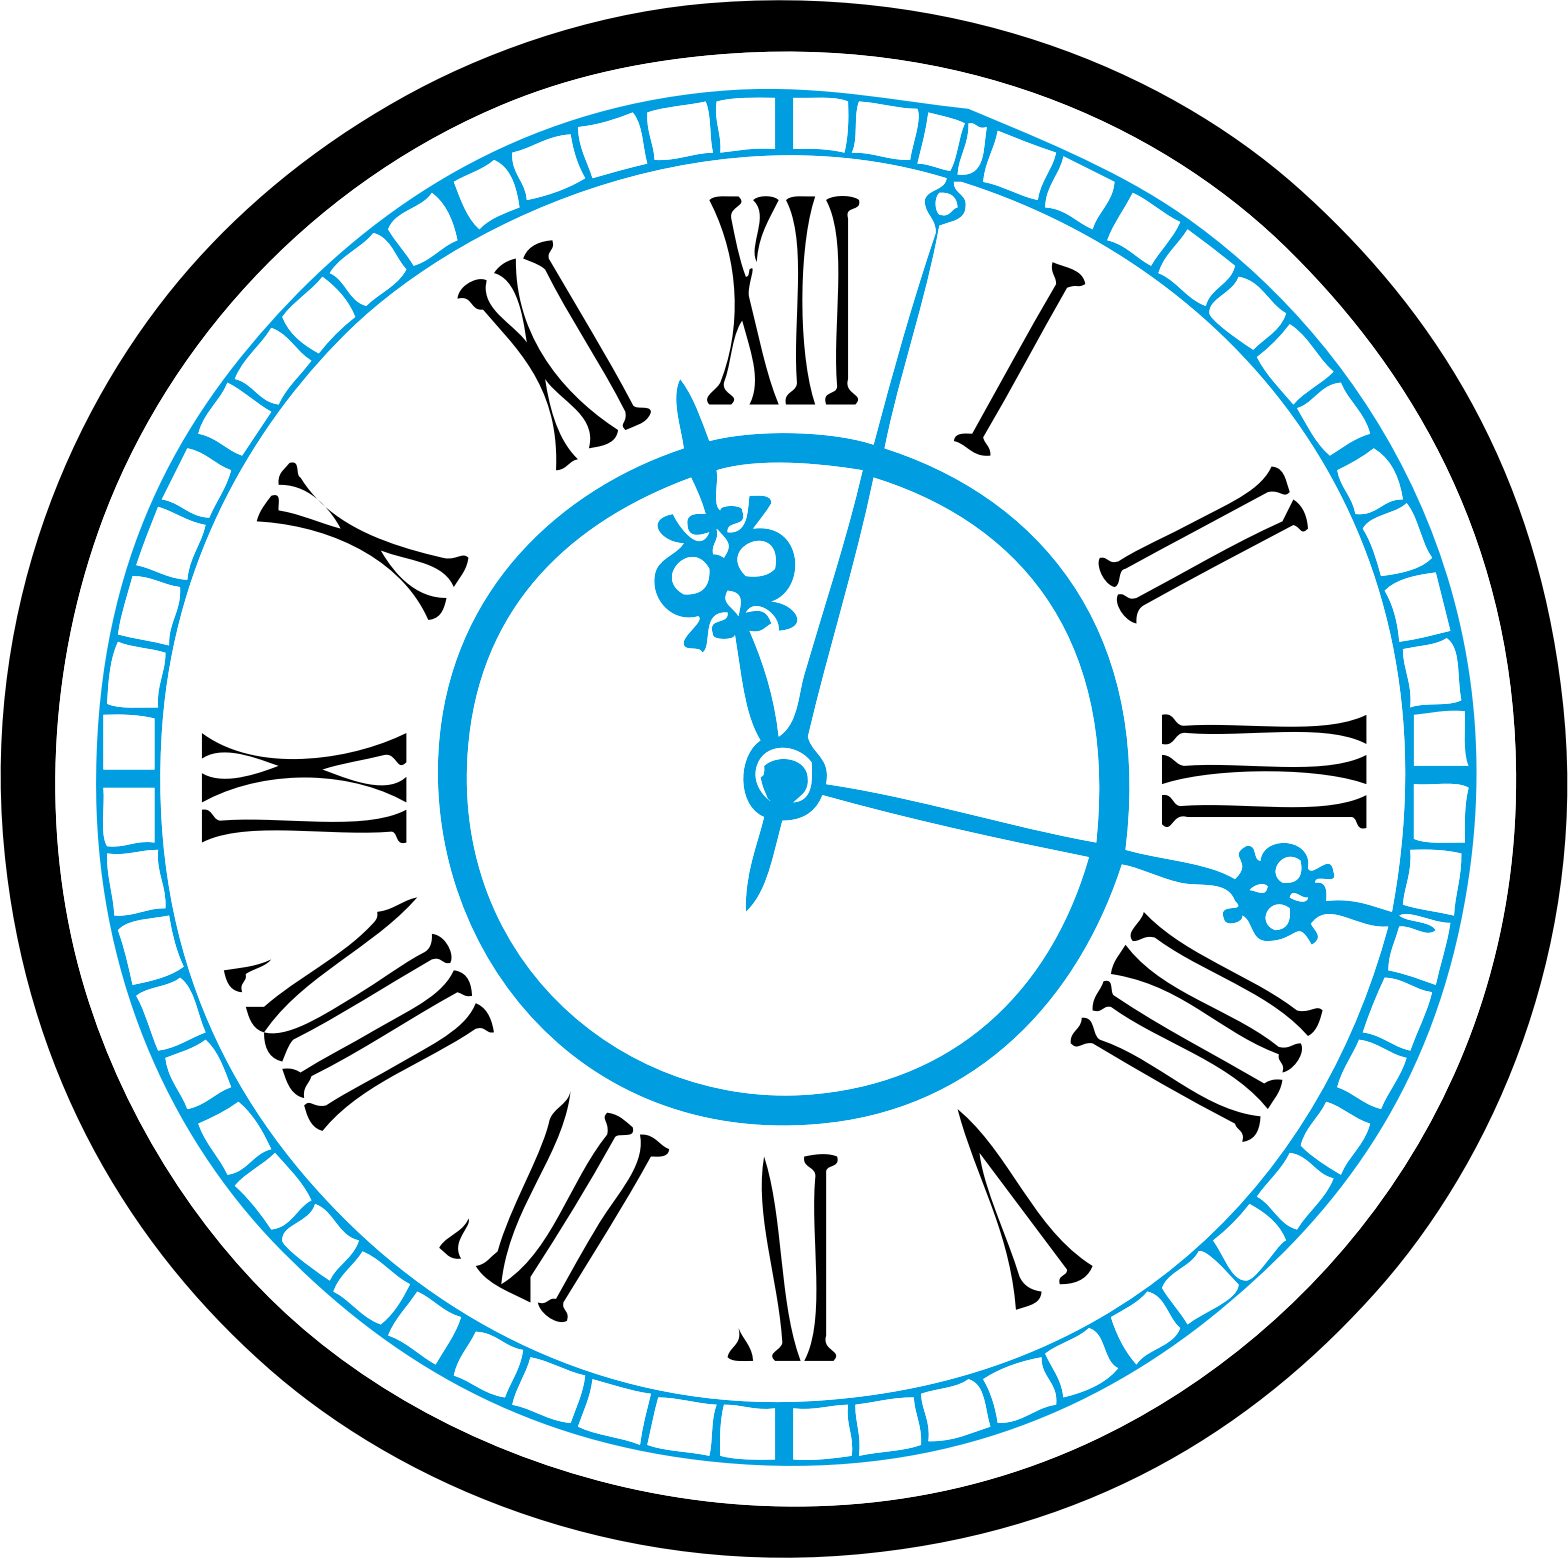 Клипарт часы на прозрачном фоне. Часы циферблат. Векторное изображение часов. Векторное изображение циферблата часов. Часы круглые вектор.